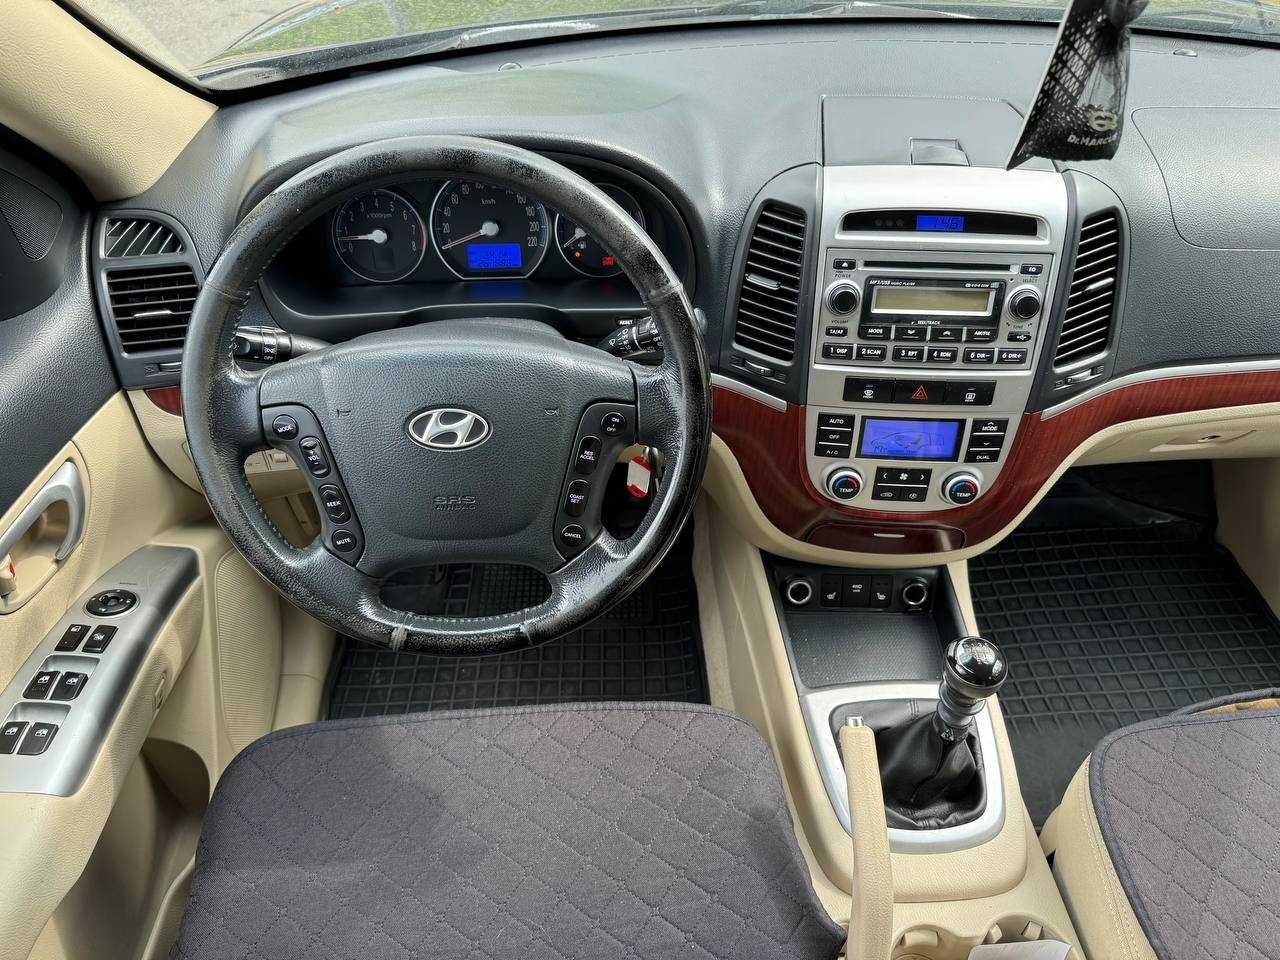 Hyundai Santa Fe 2007 рік, 2.7 газ/бензин, механіка, повний привід